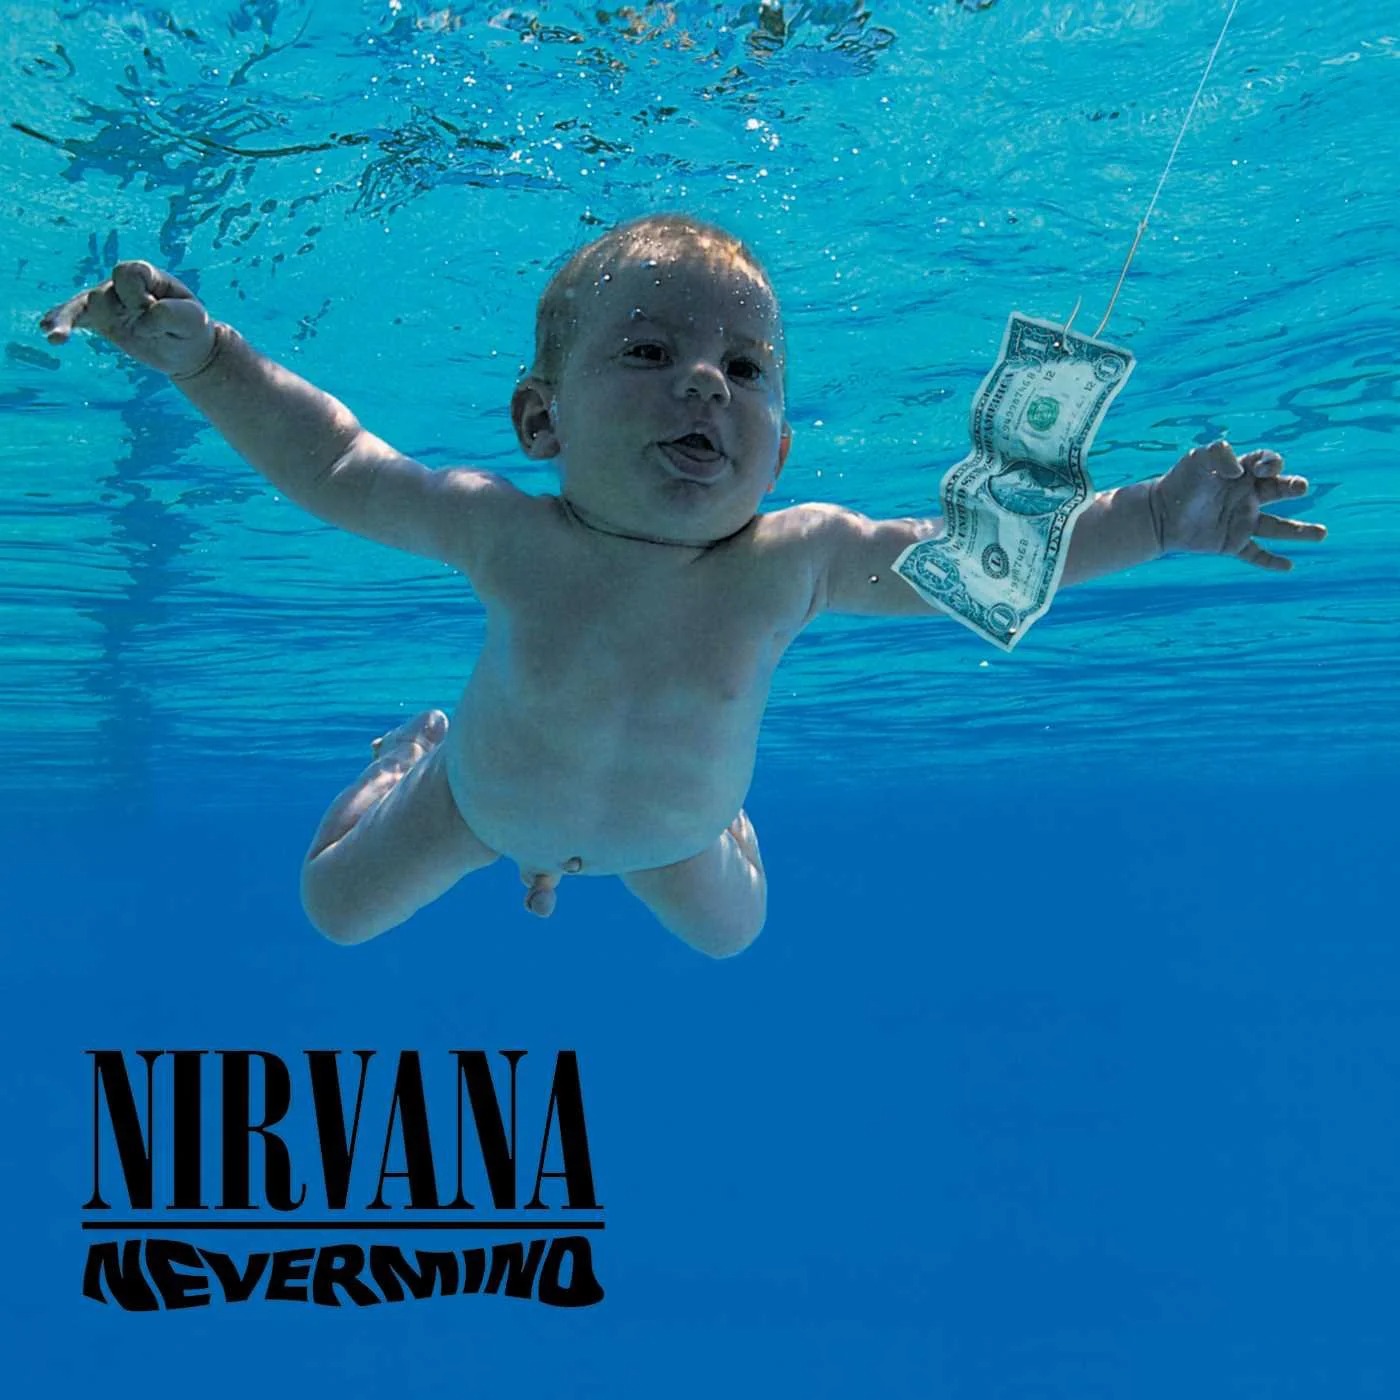 album "Nevermind